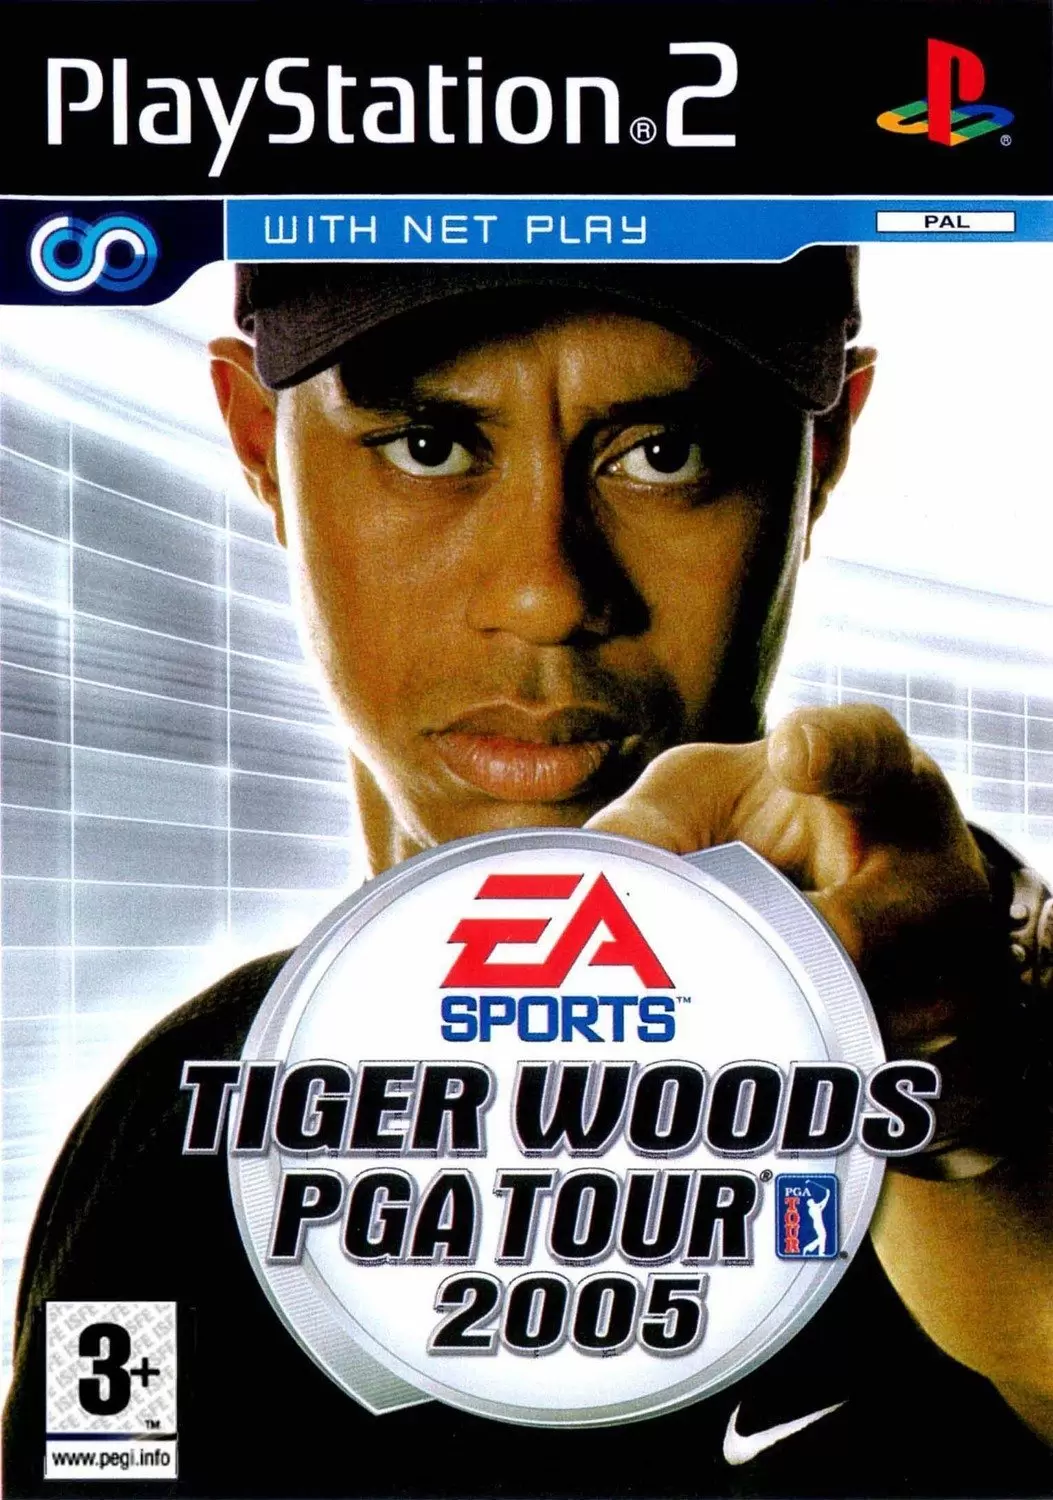 PS2 Games - Tiger Woods PGA Tour 2005